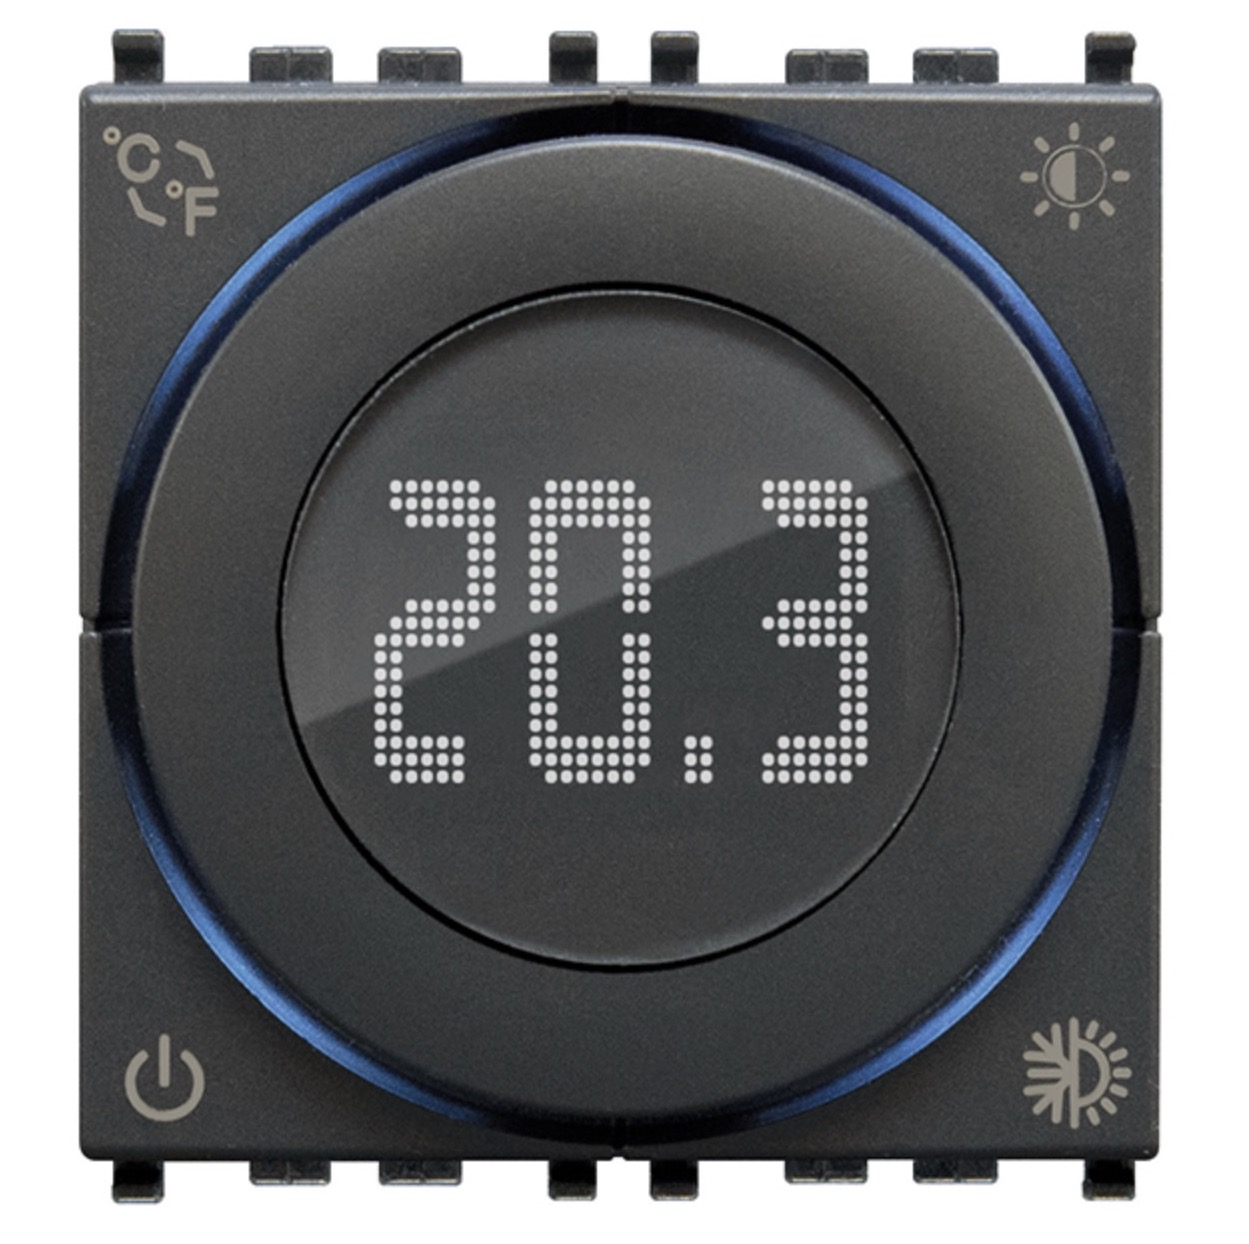 Il termostato smart Vimar si connette ai vostri ritmi di vita